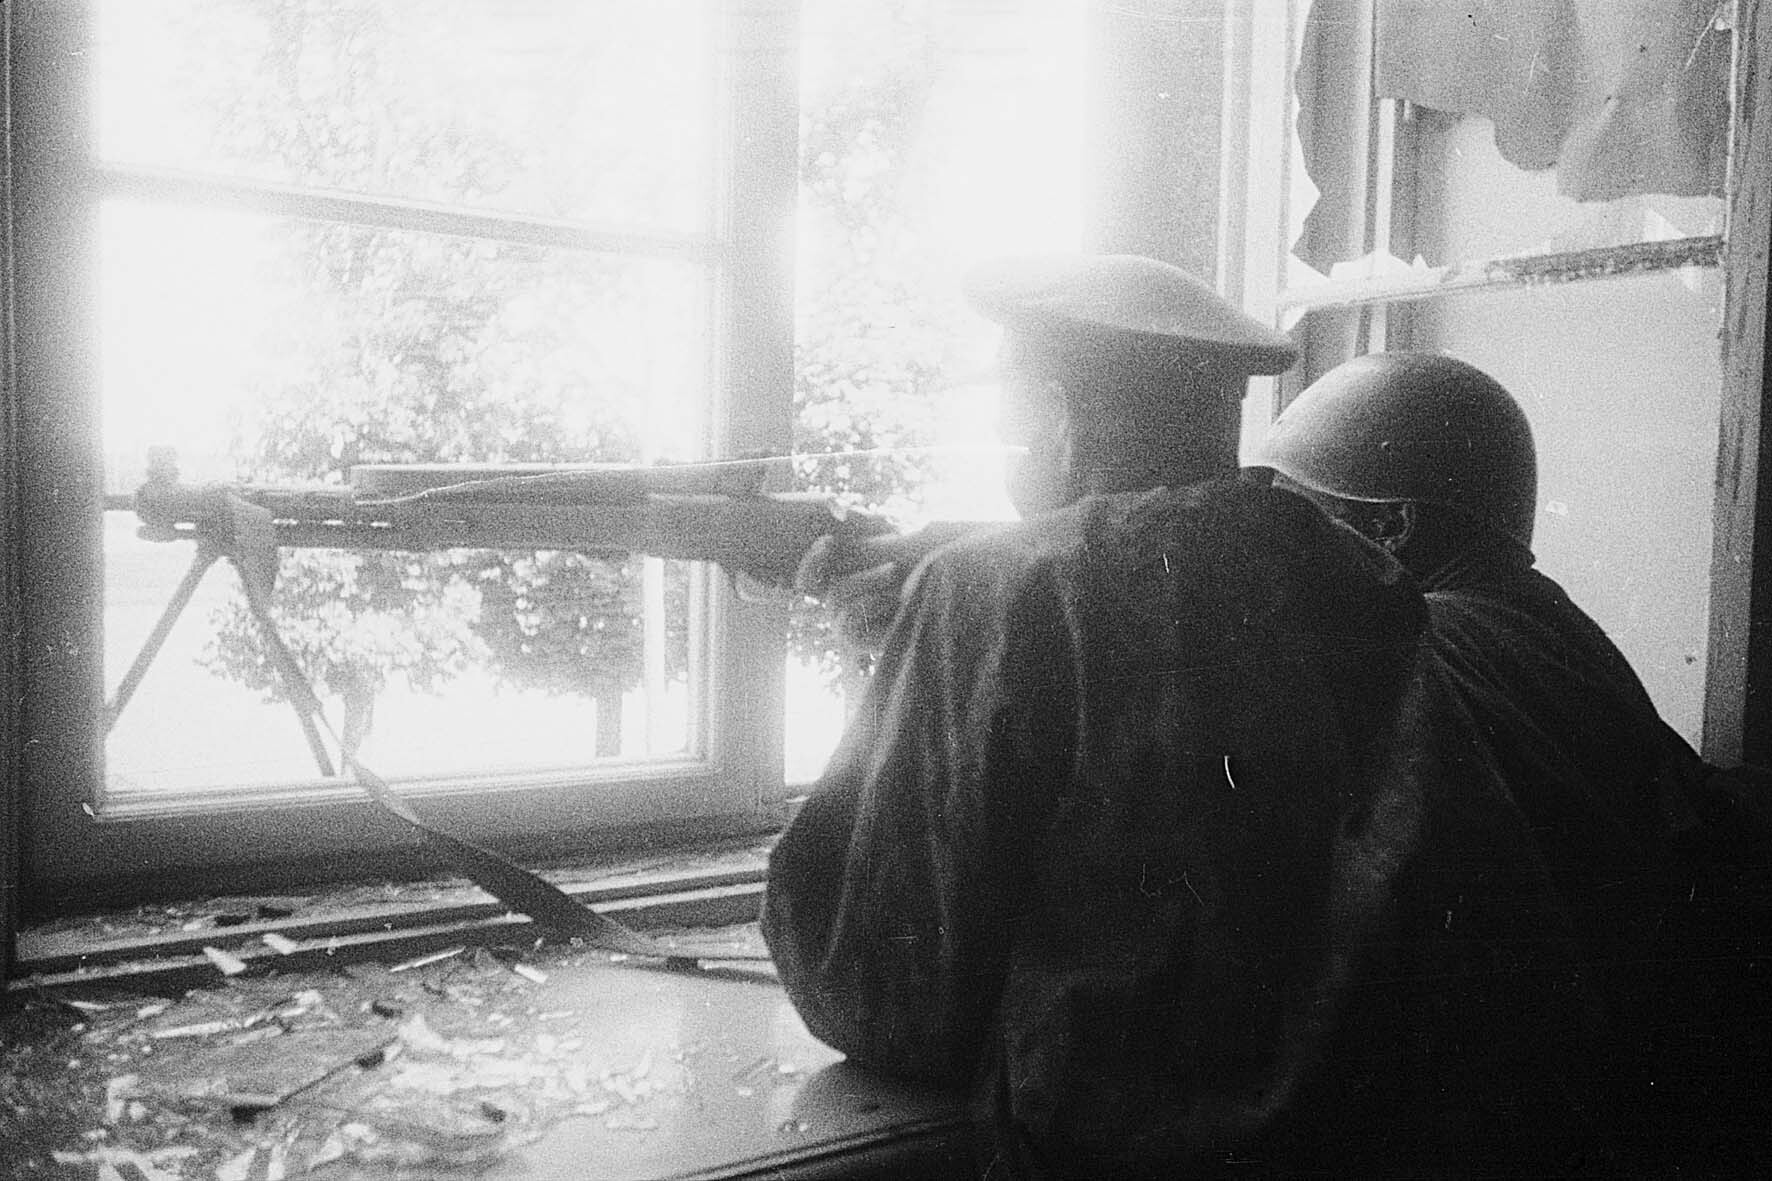 Fotografie: Gefechte in Mitau (Jelgava), Lettland, August 1944 (Museum Berlin-Karlshorst RR-P)